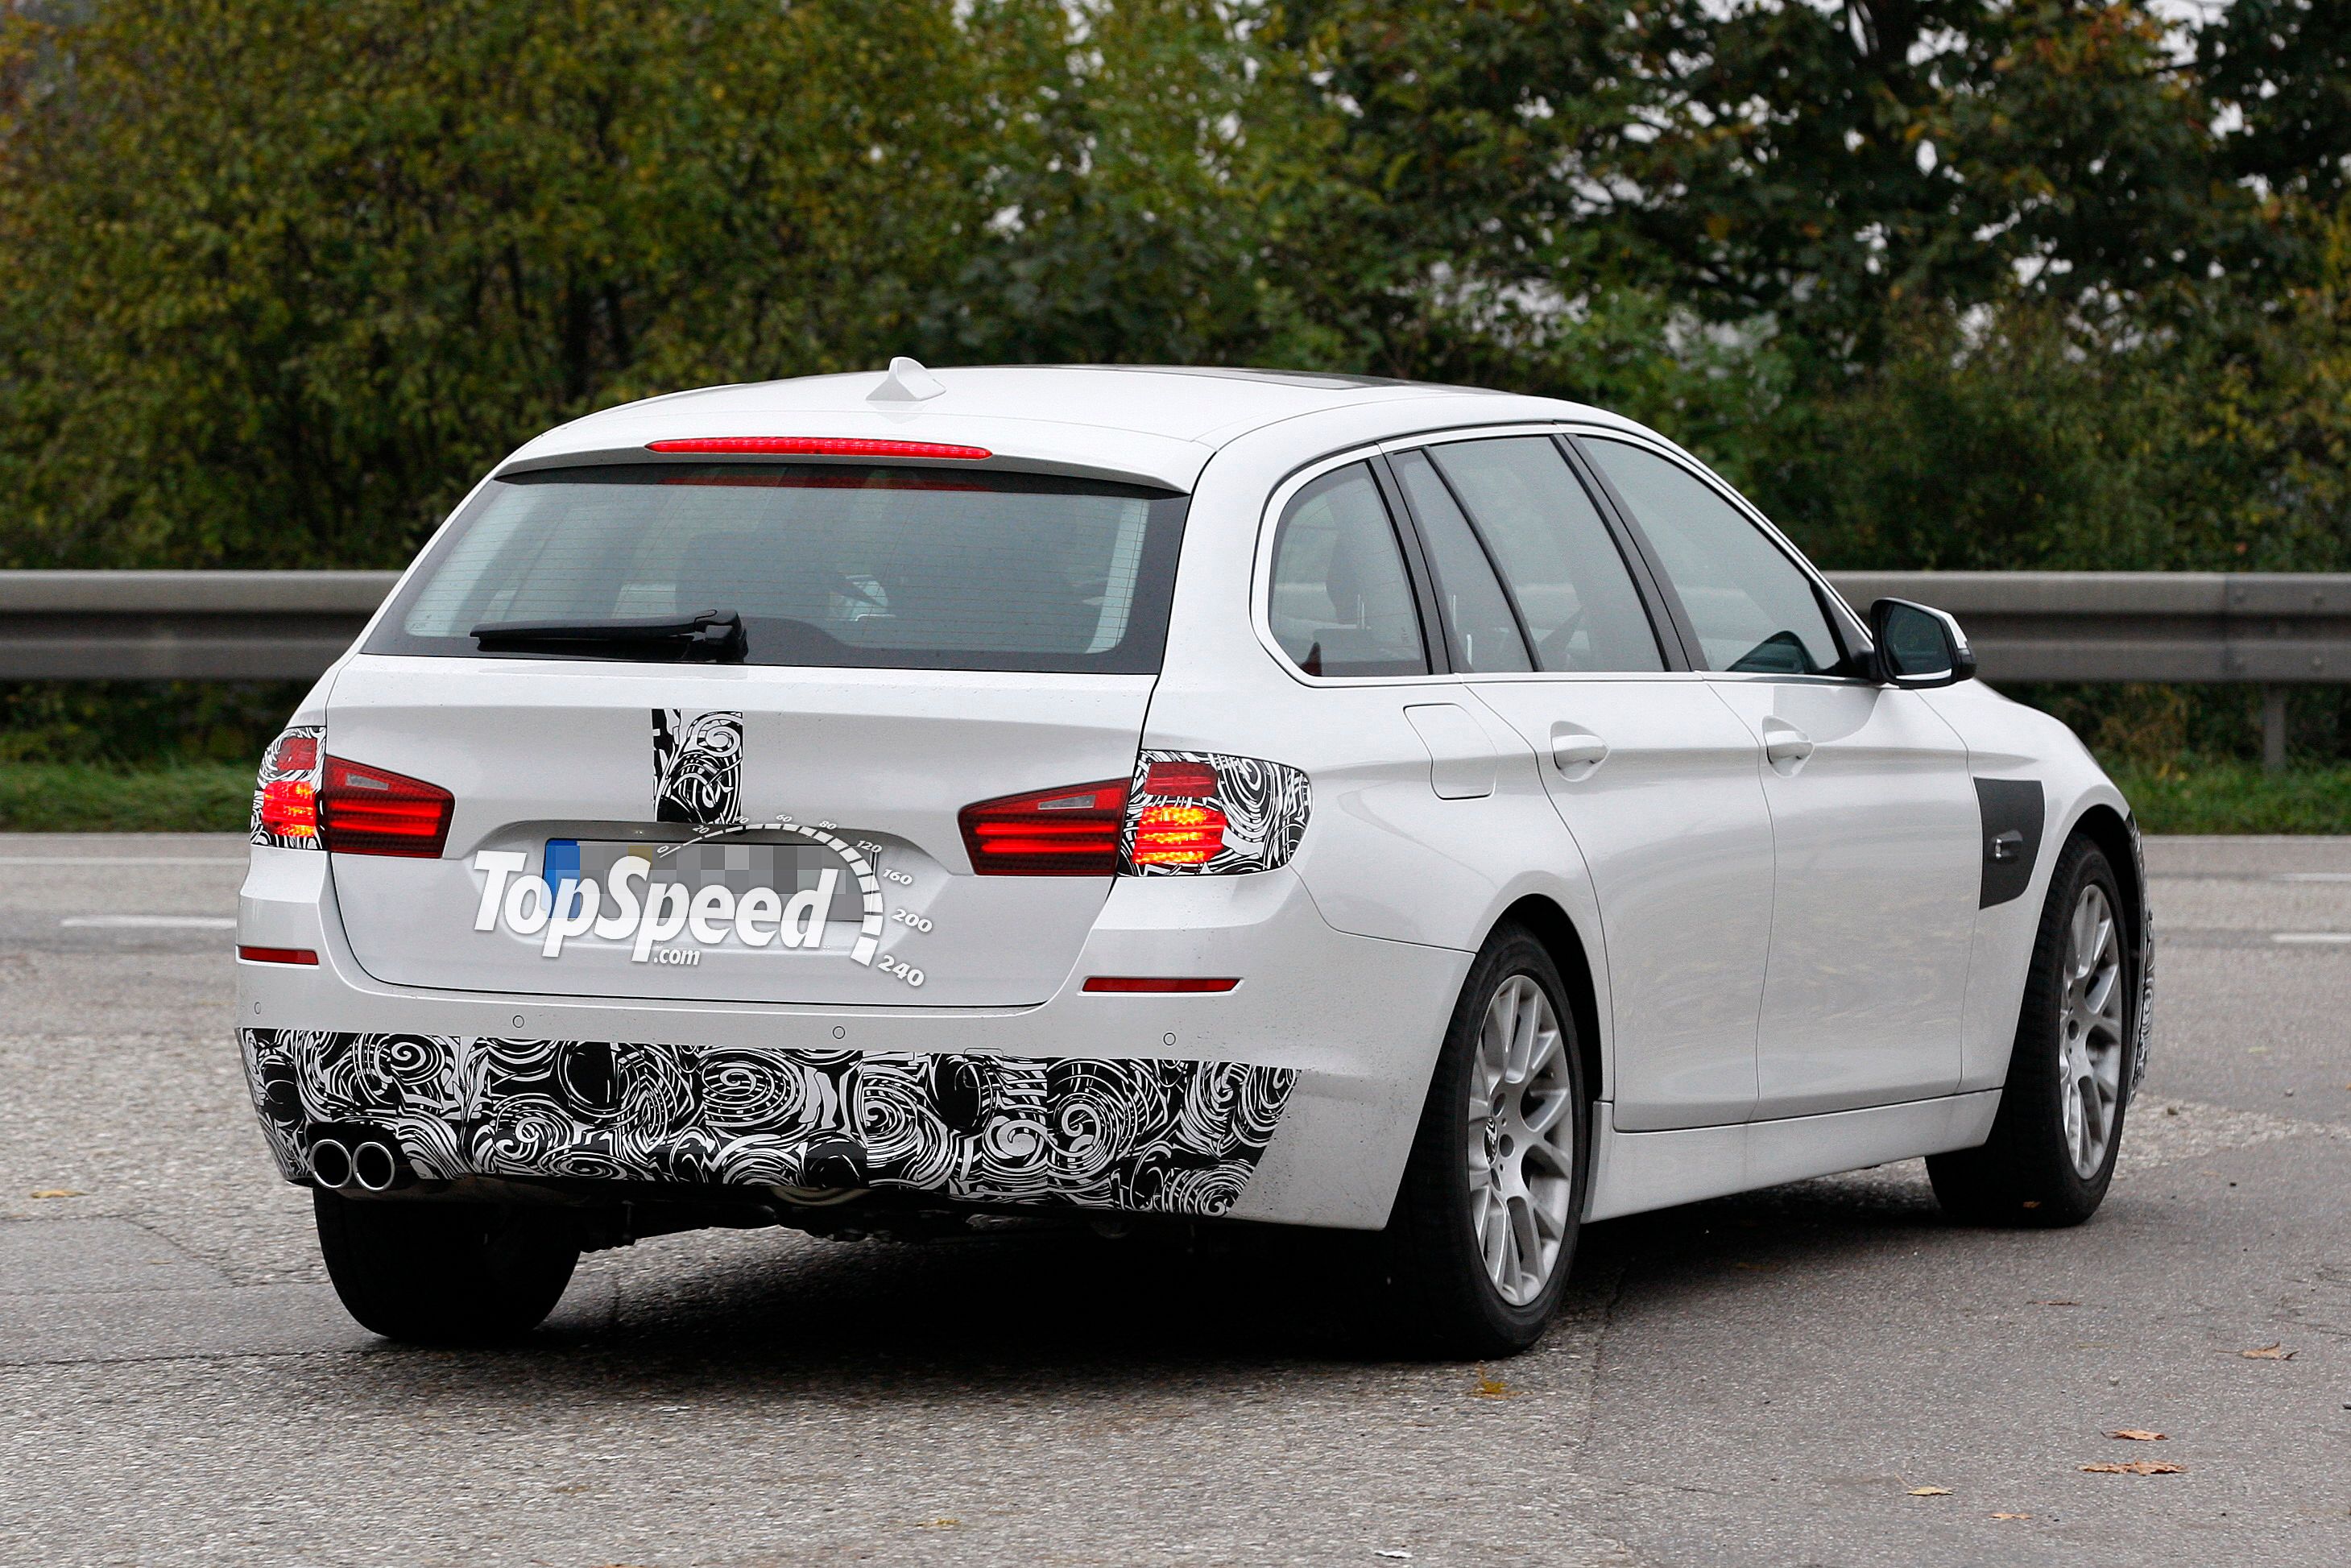 2014 BMW 5-Series Touring